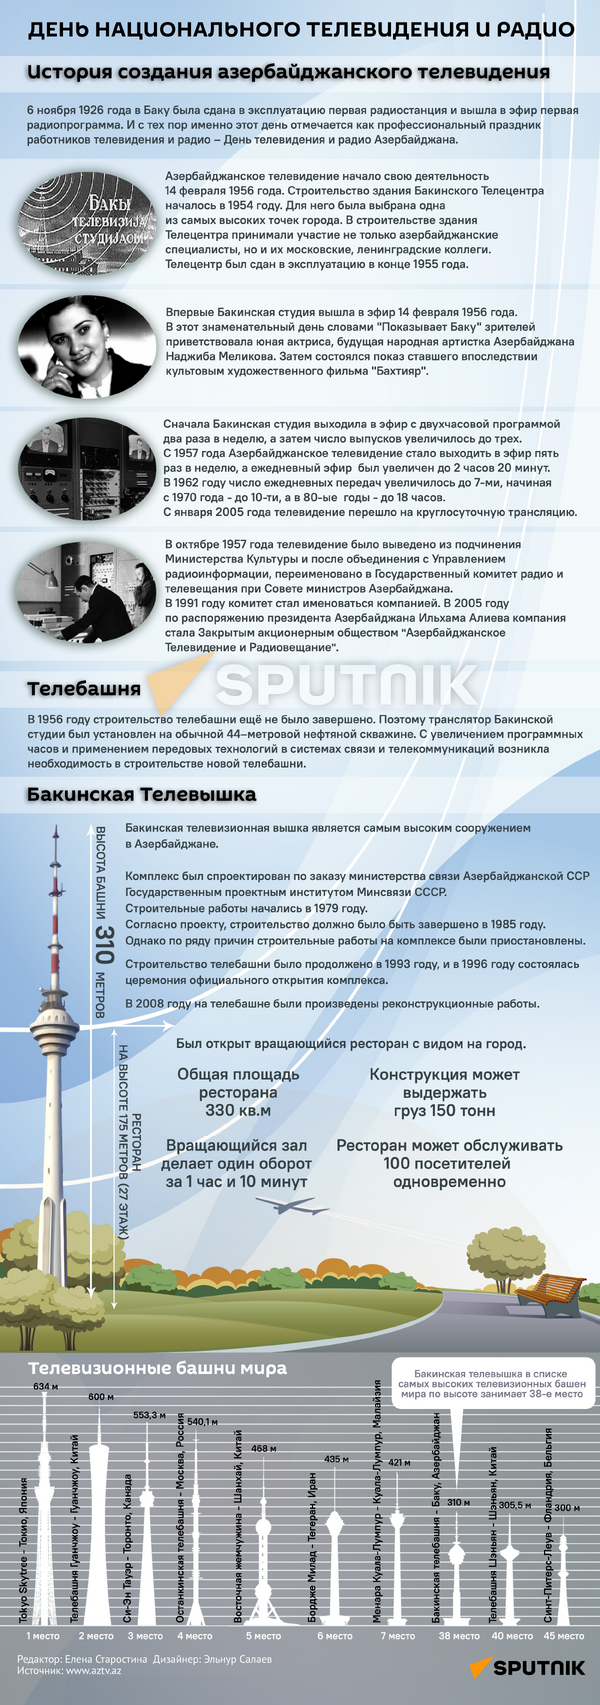 Инфографика: День национального телевидения и радио - Sputnik Азербайджан